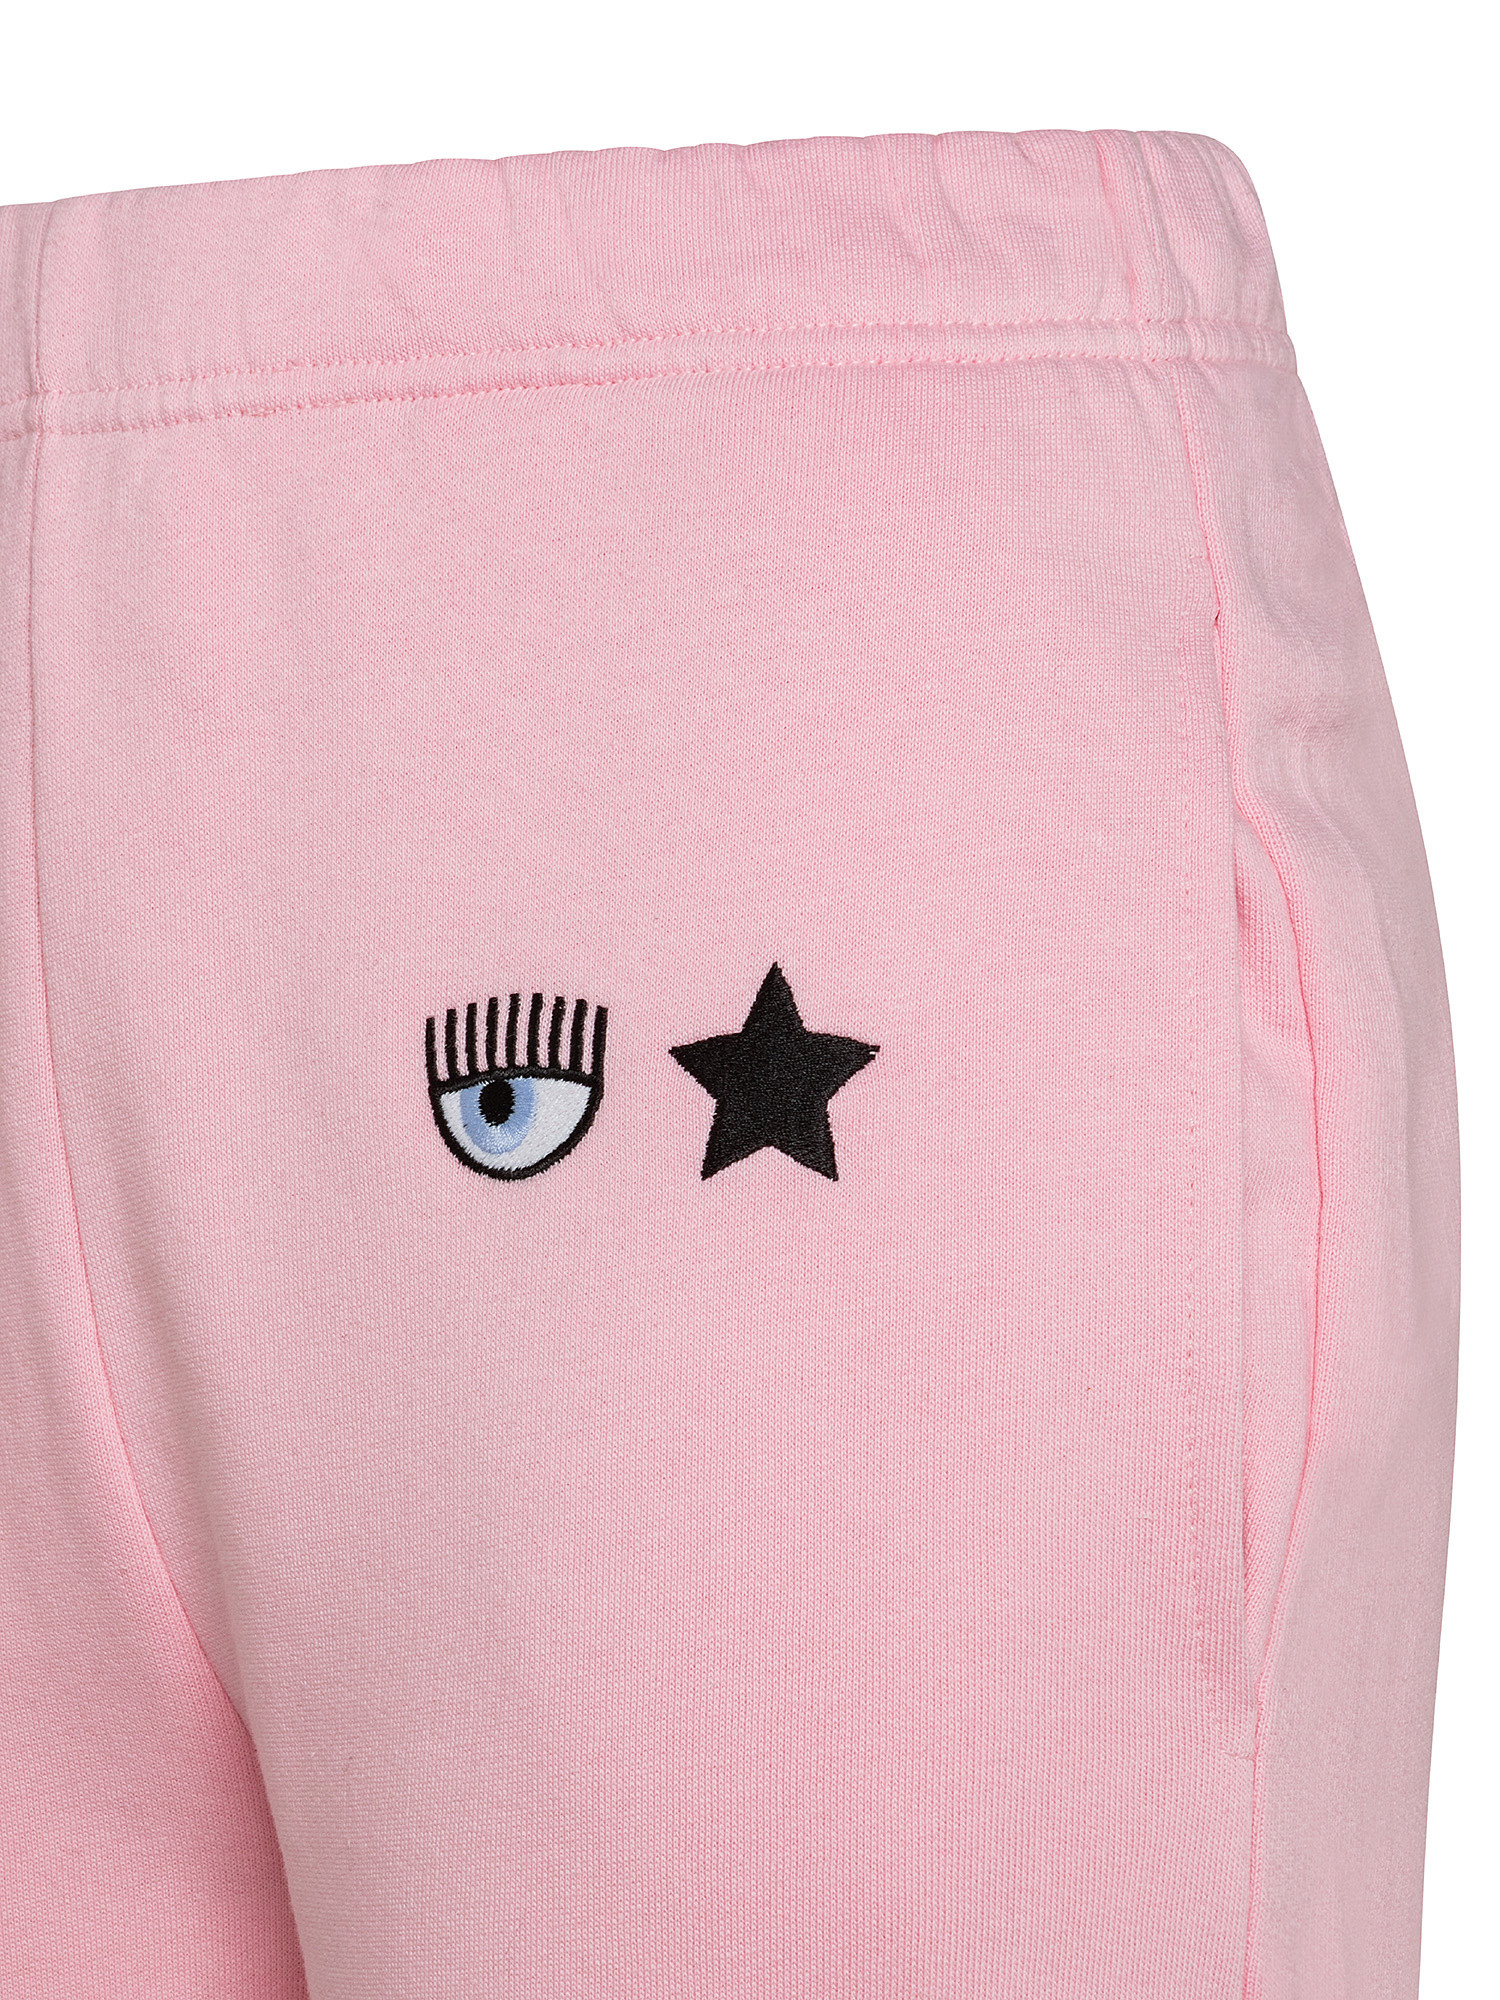 Eye Star Pants, Pink, large image number 2